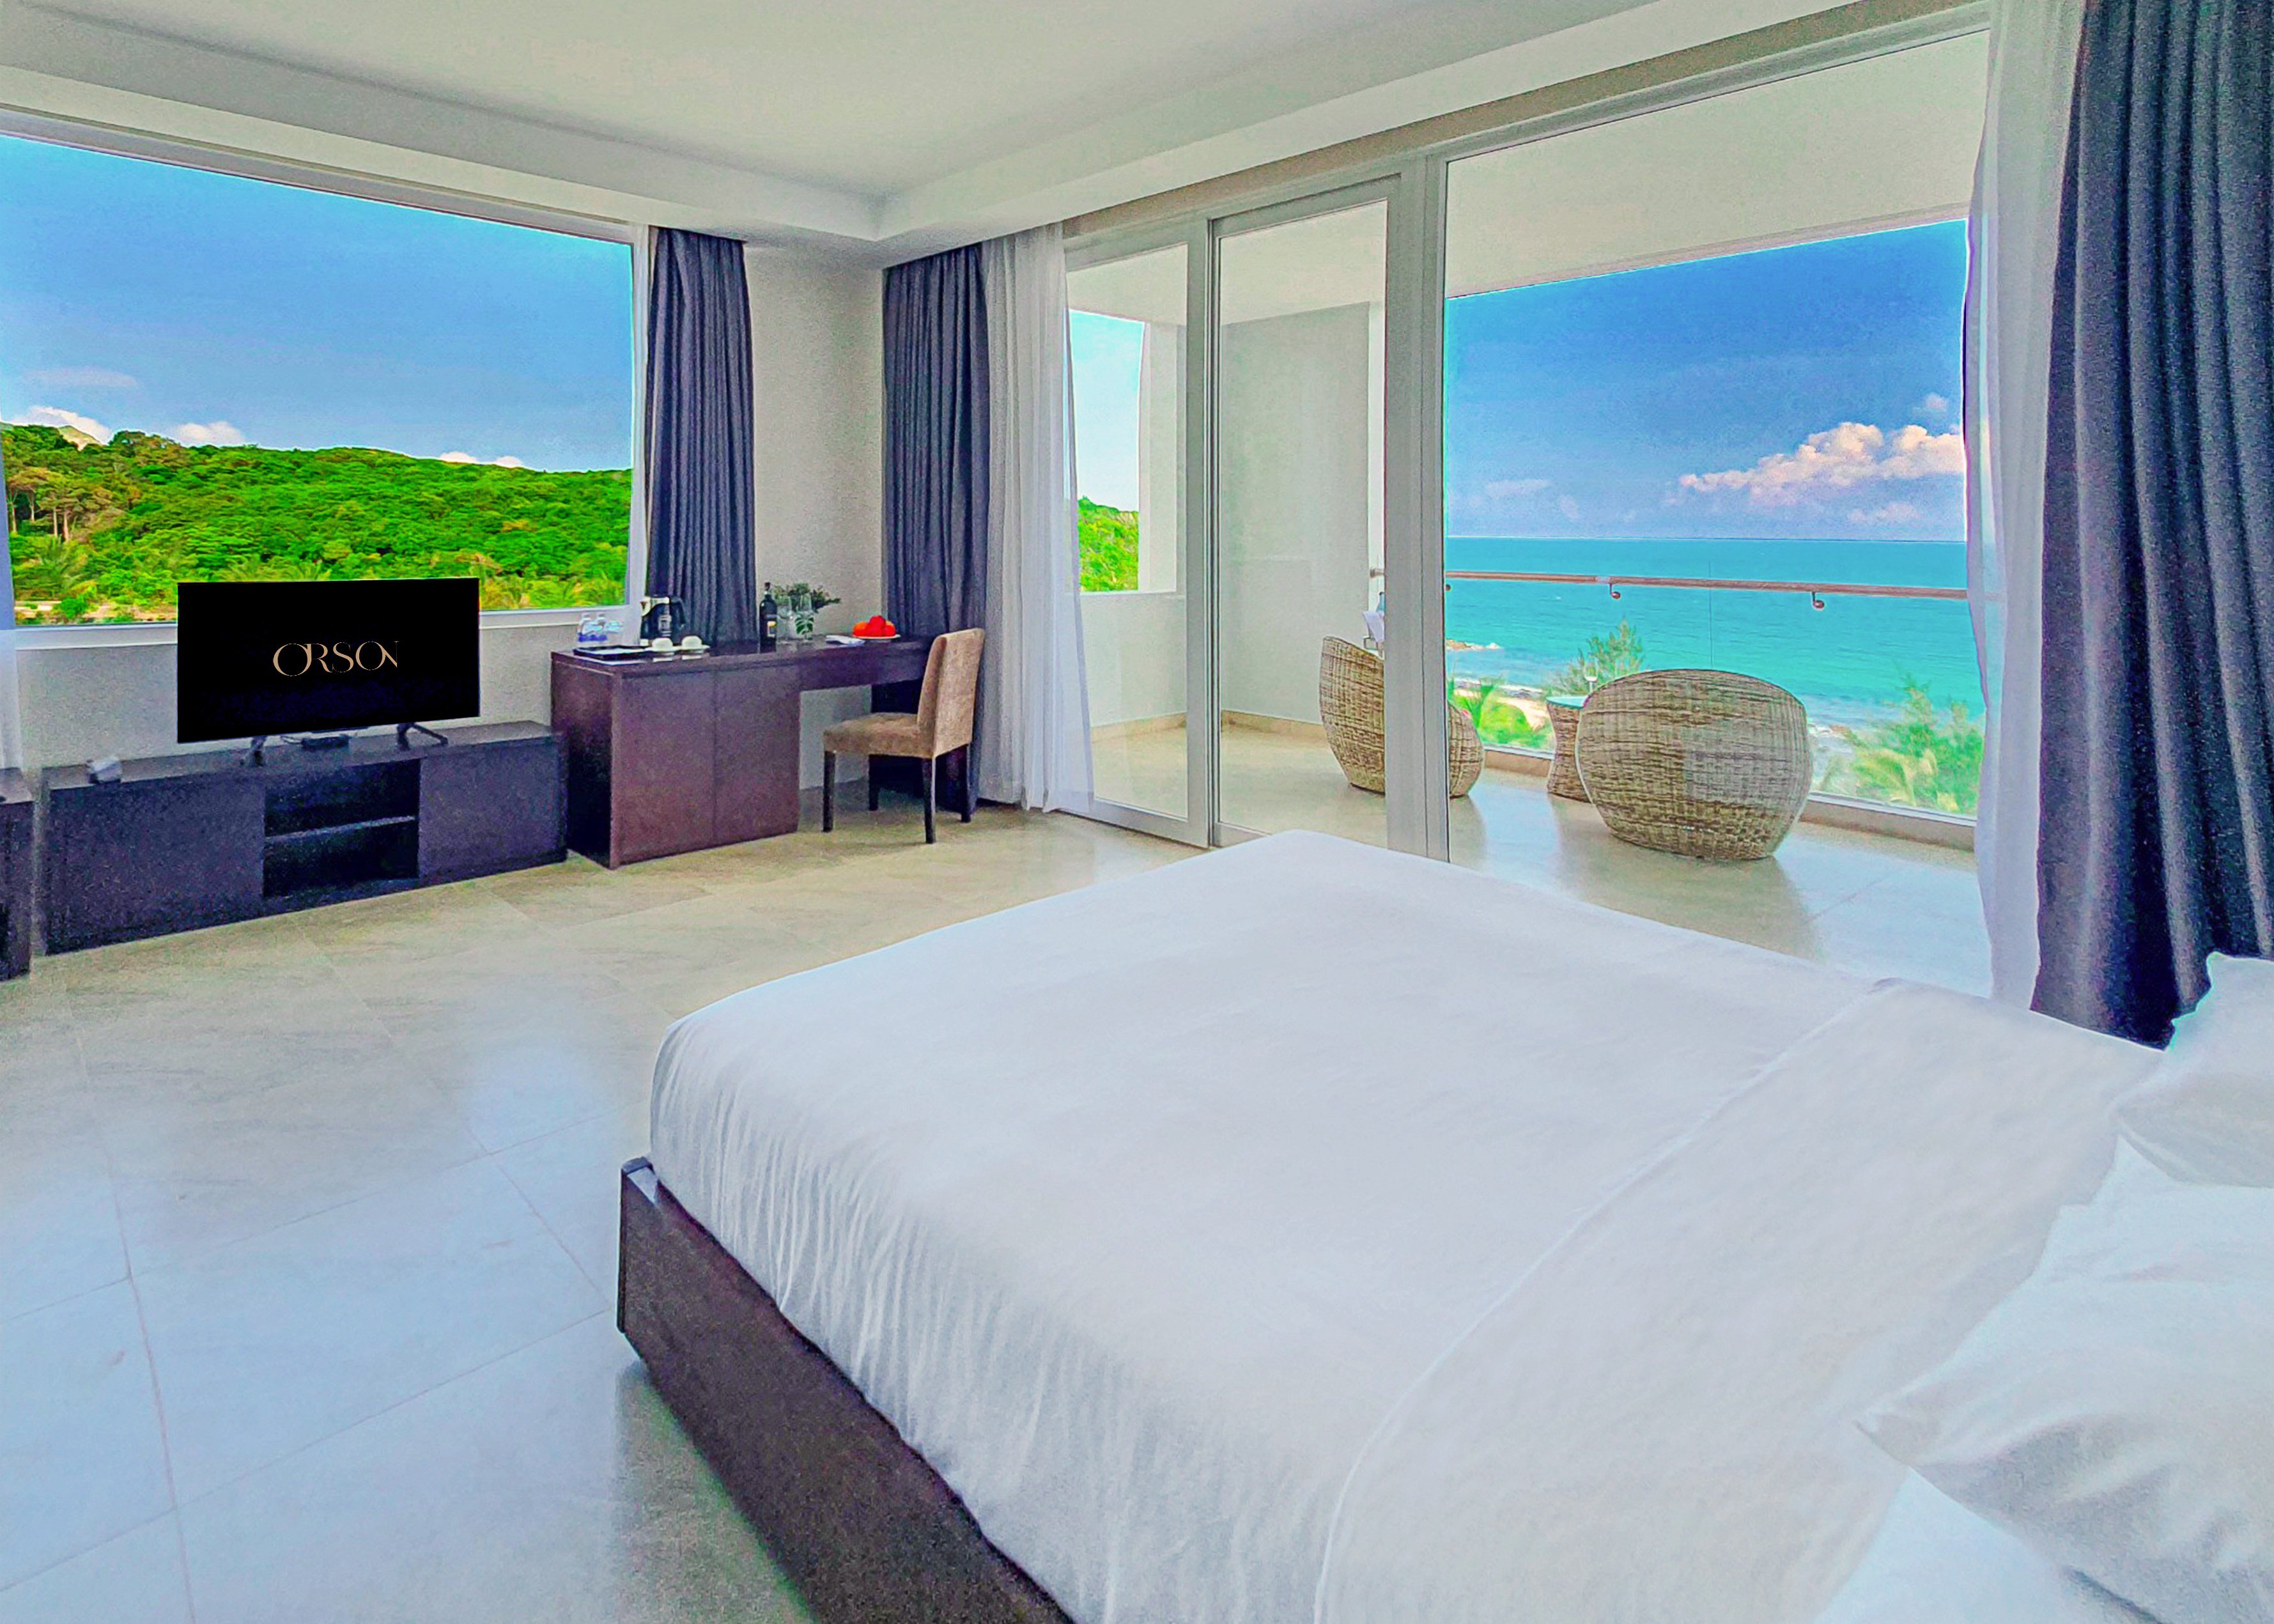 Orson- Hotel - Resort -Côn -Đảo -ivivu-3